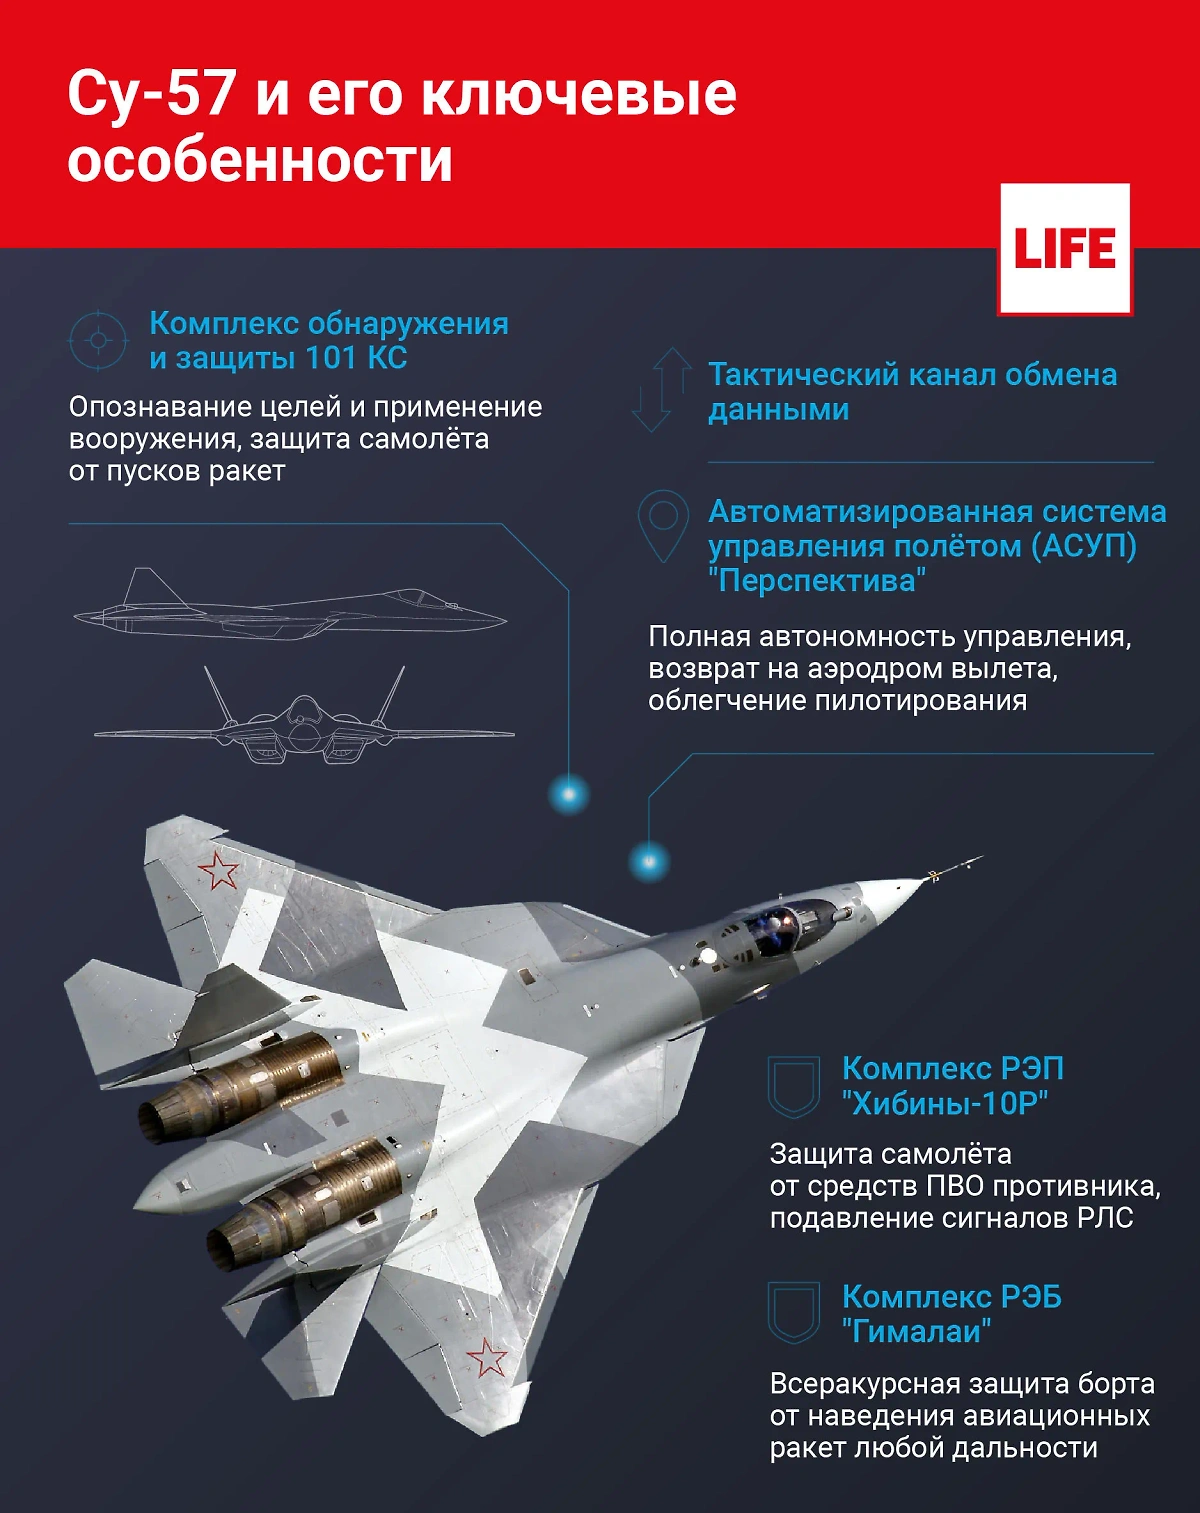 Инфографика © Life.ru